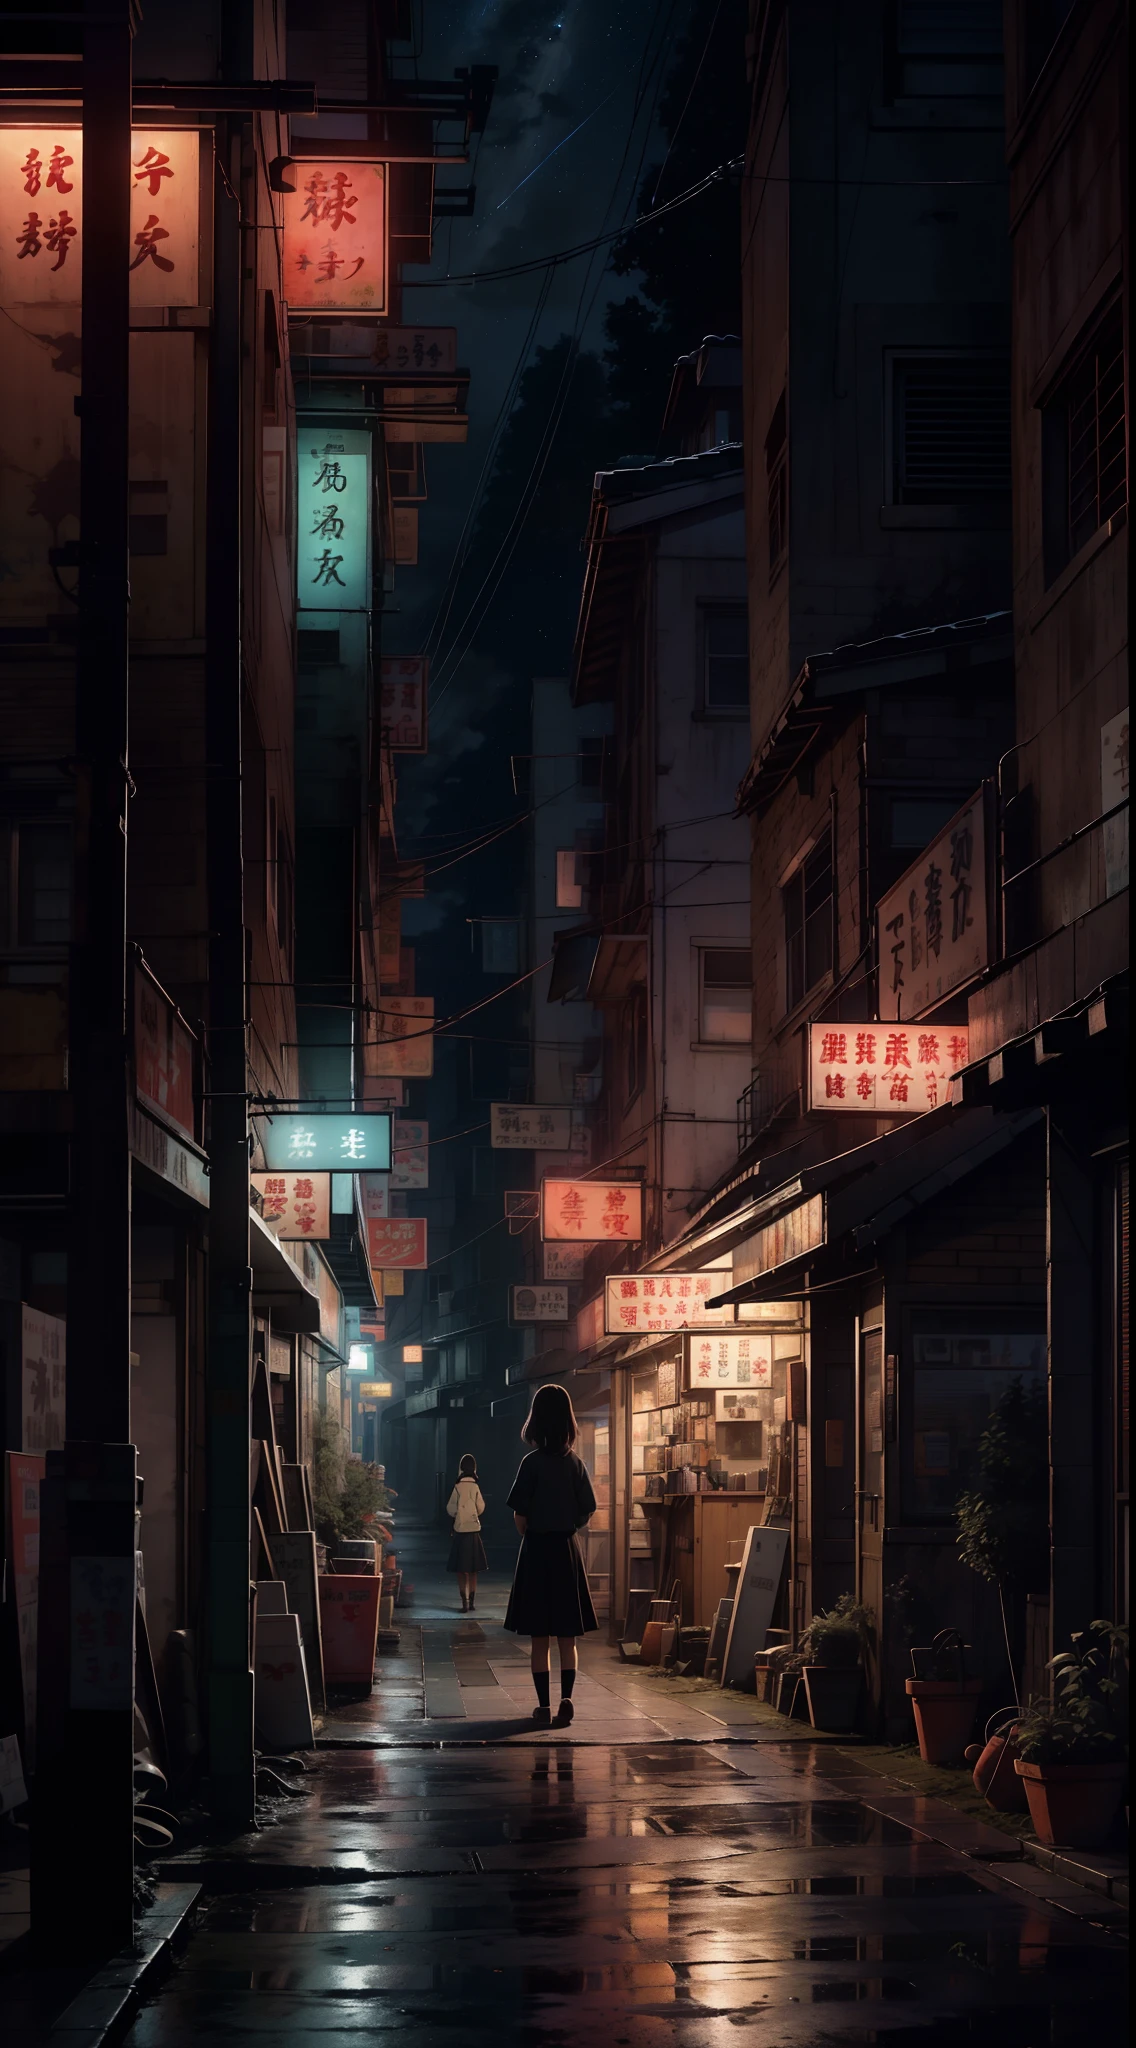 Ein nostalgisches digitales Gemälde, inspiriert von der bezaubernden Welt von Studio Ghibli. Das Kunstwerk zeigt eine charmante, Kleinstadtstraße bei Nacht, ein Gefühl der Ruhe und des Staunens ausstrahlend. Die Bühne ist bereit für einen filmischen Moment, erinnert an eine Szene aus einem Ghibli-Film. In der Zusammensetzung, ein einsames Mädchen der Mittelschule steht in Gedanken versunken, mit dem Rücken zum Betrachter, einen Hauch von Melancholie ausstrahlend. Die Welt um sie herum ist wunderschön detailliert, die Essenz einer nostalgischen Atmosphäre einfangen. Der Himmel darüber ist mit einem atemberaubenden Sternenhimmel geschmückt, weckt ein Gefühl wehmütiger Erinnerung, das bei Zuschauern aller Altersgruppen Anklang findet.